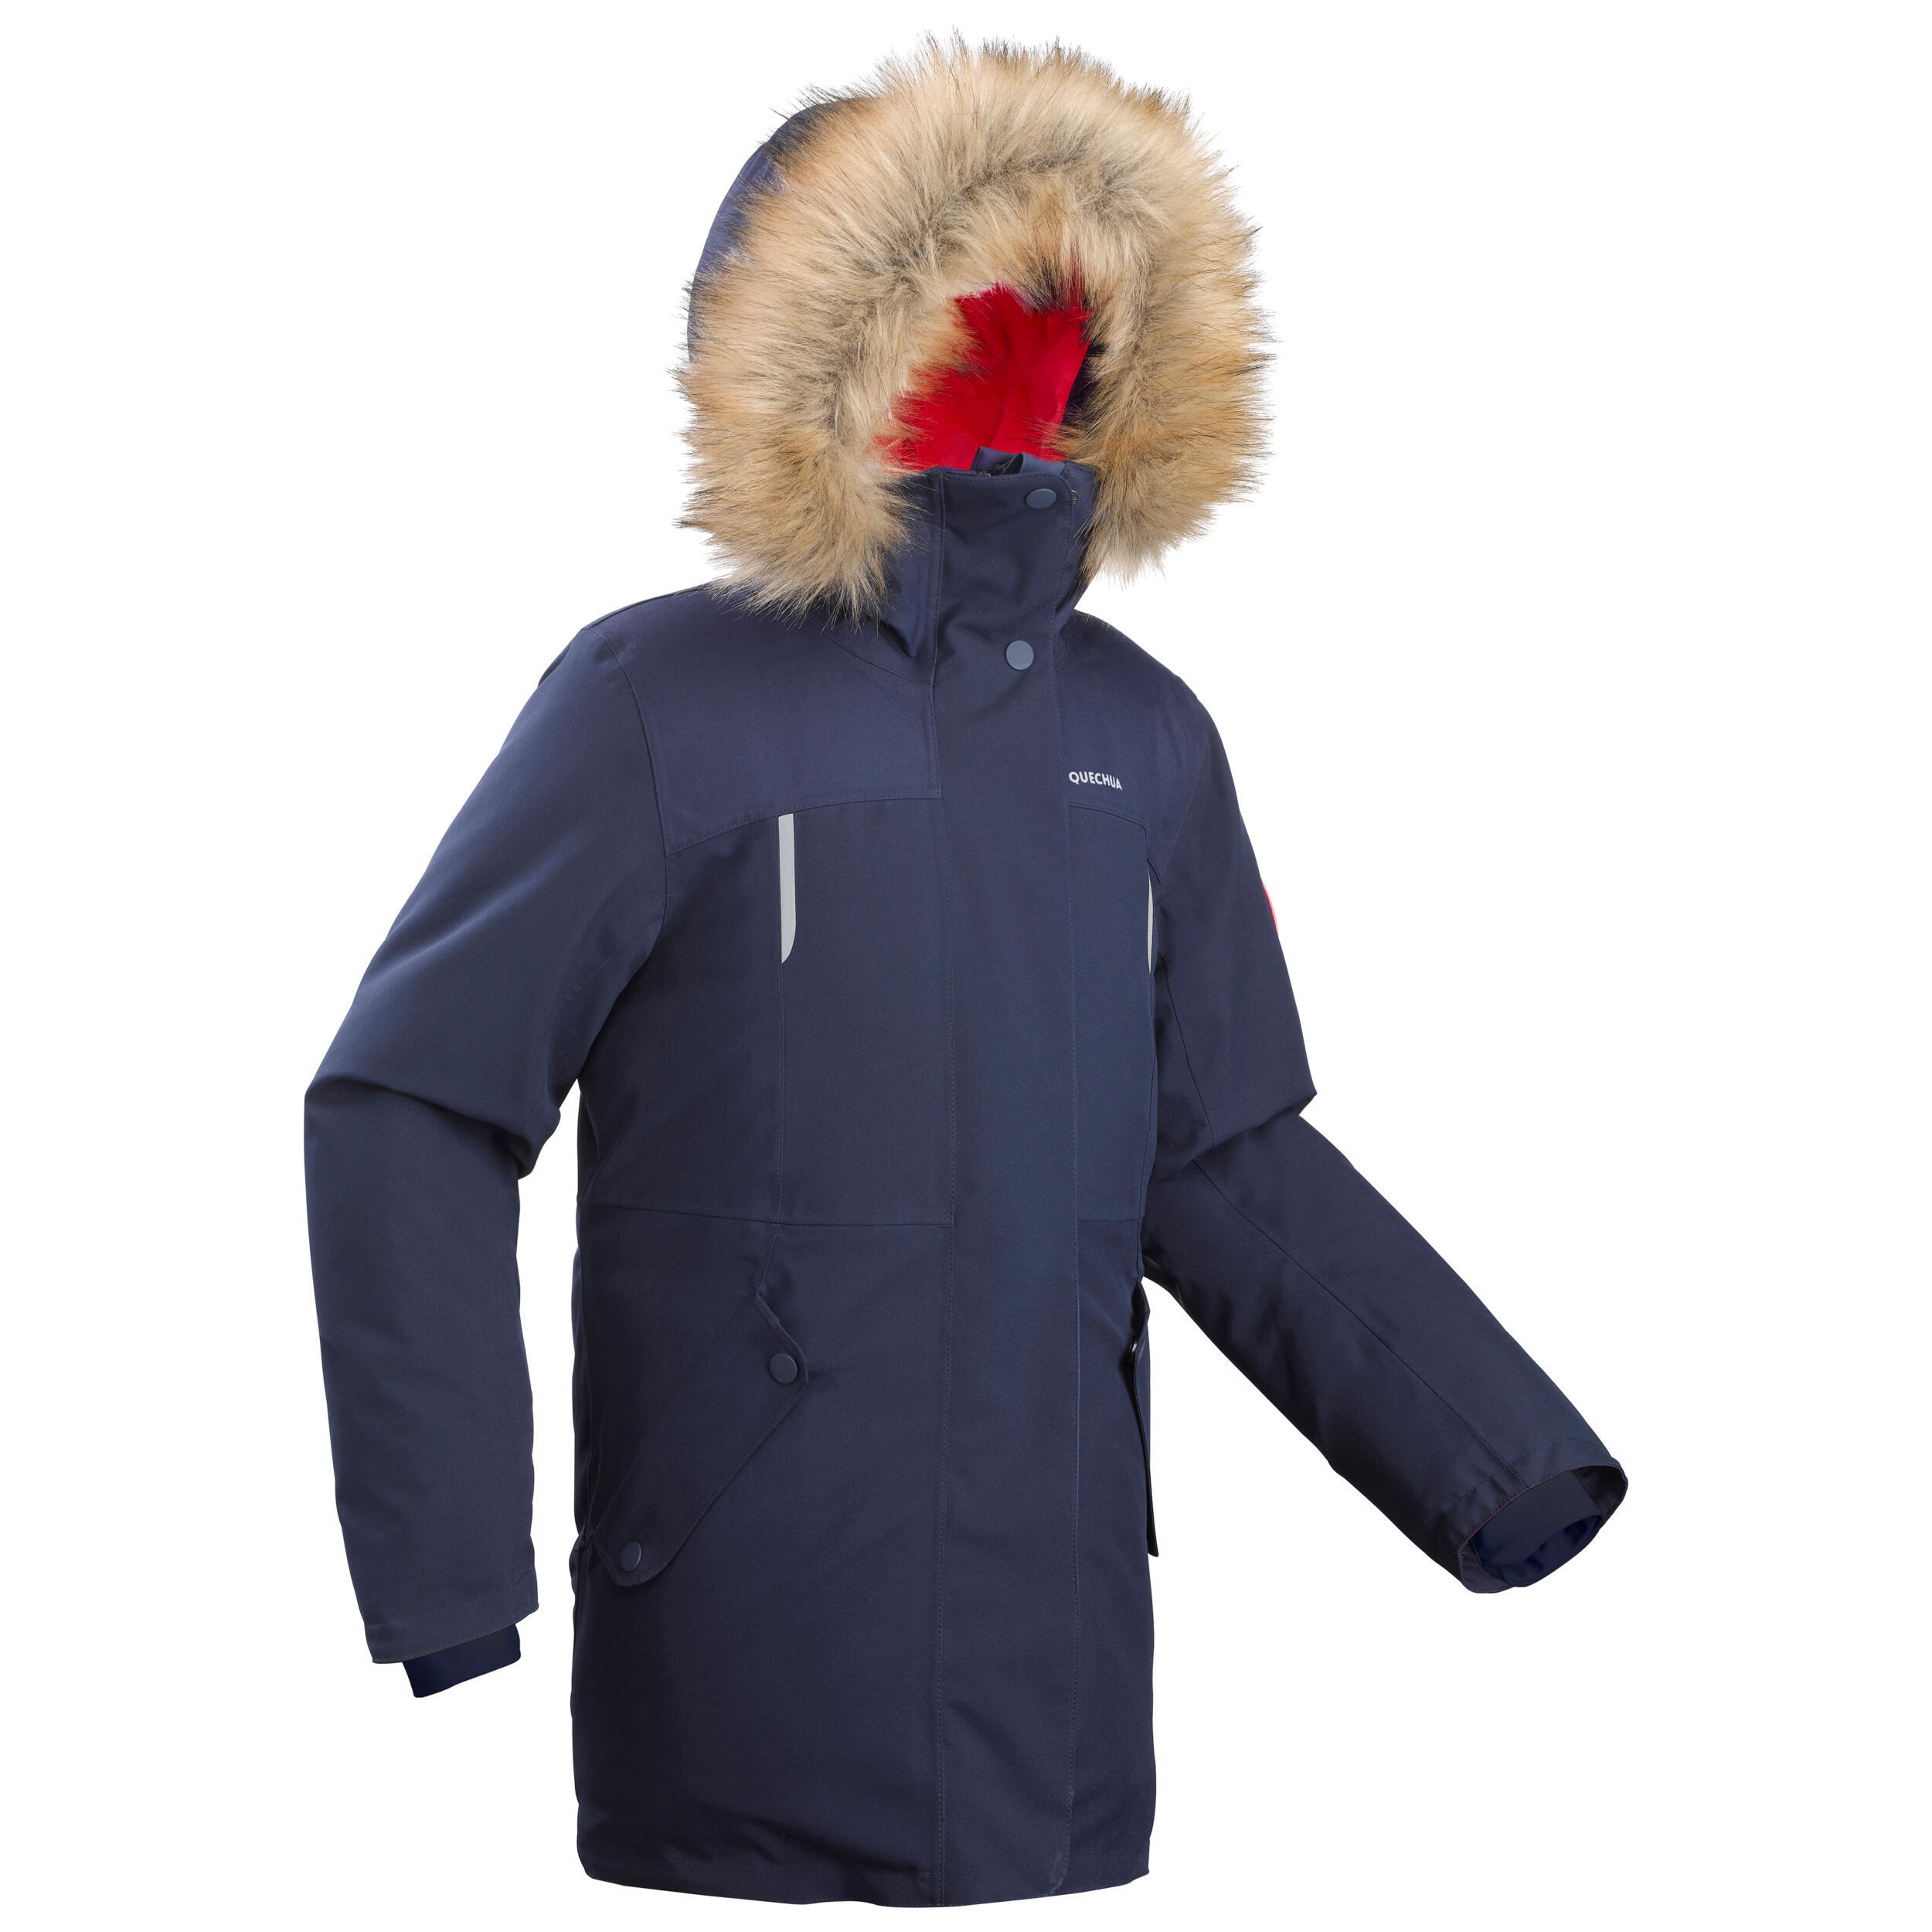 Куртка-парка Quechua SH500 теплая непромокаемая походная детская, синий